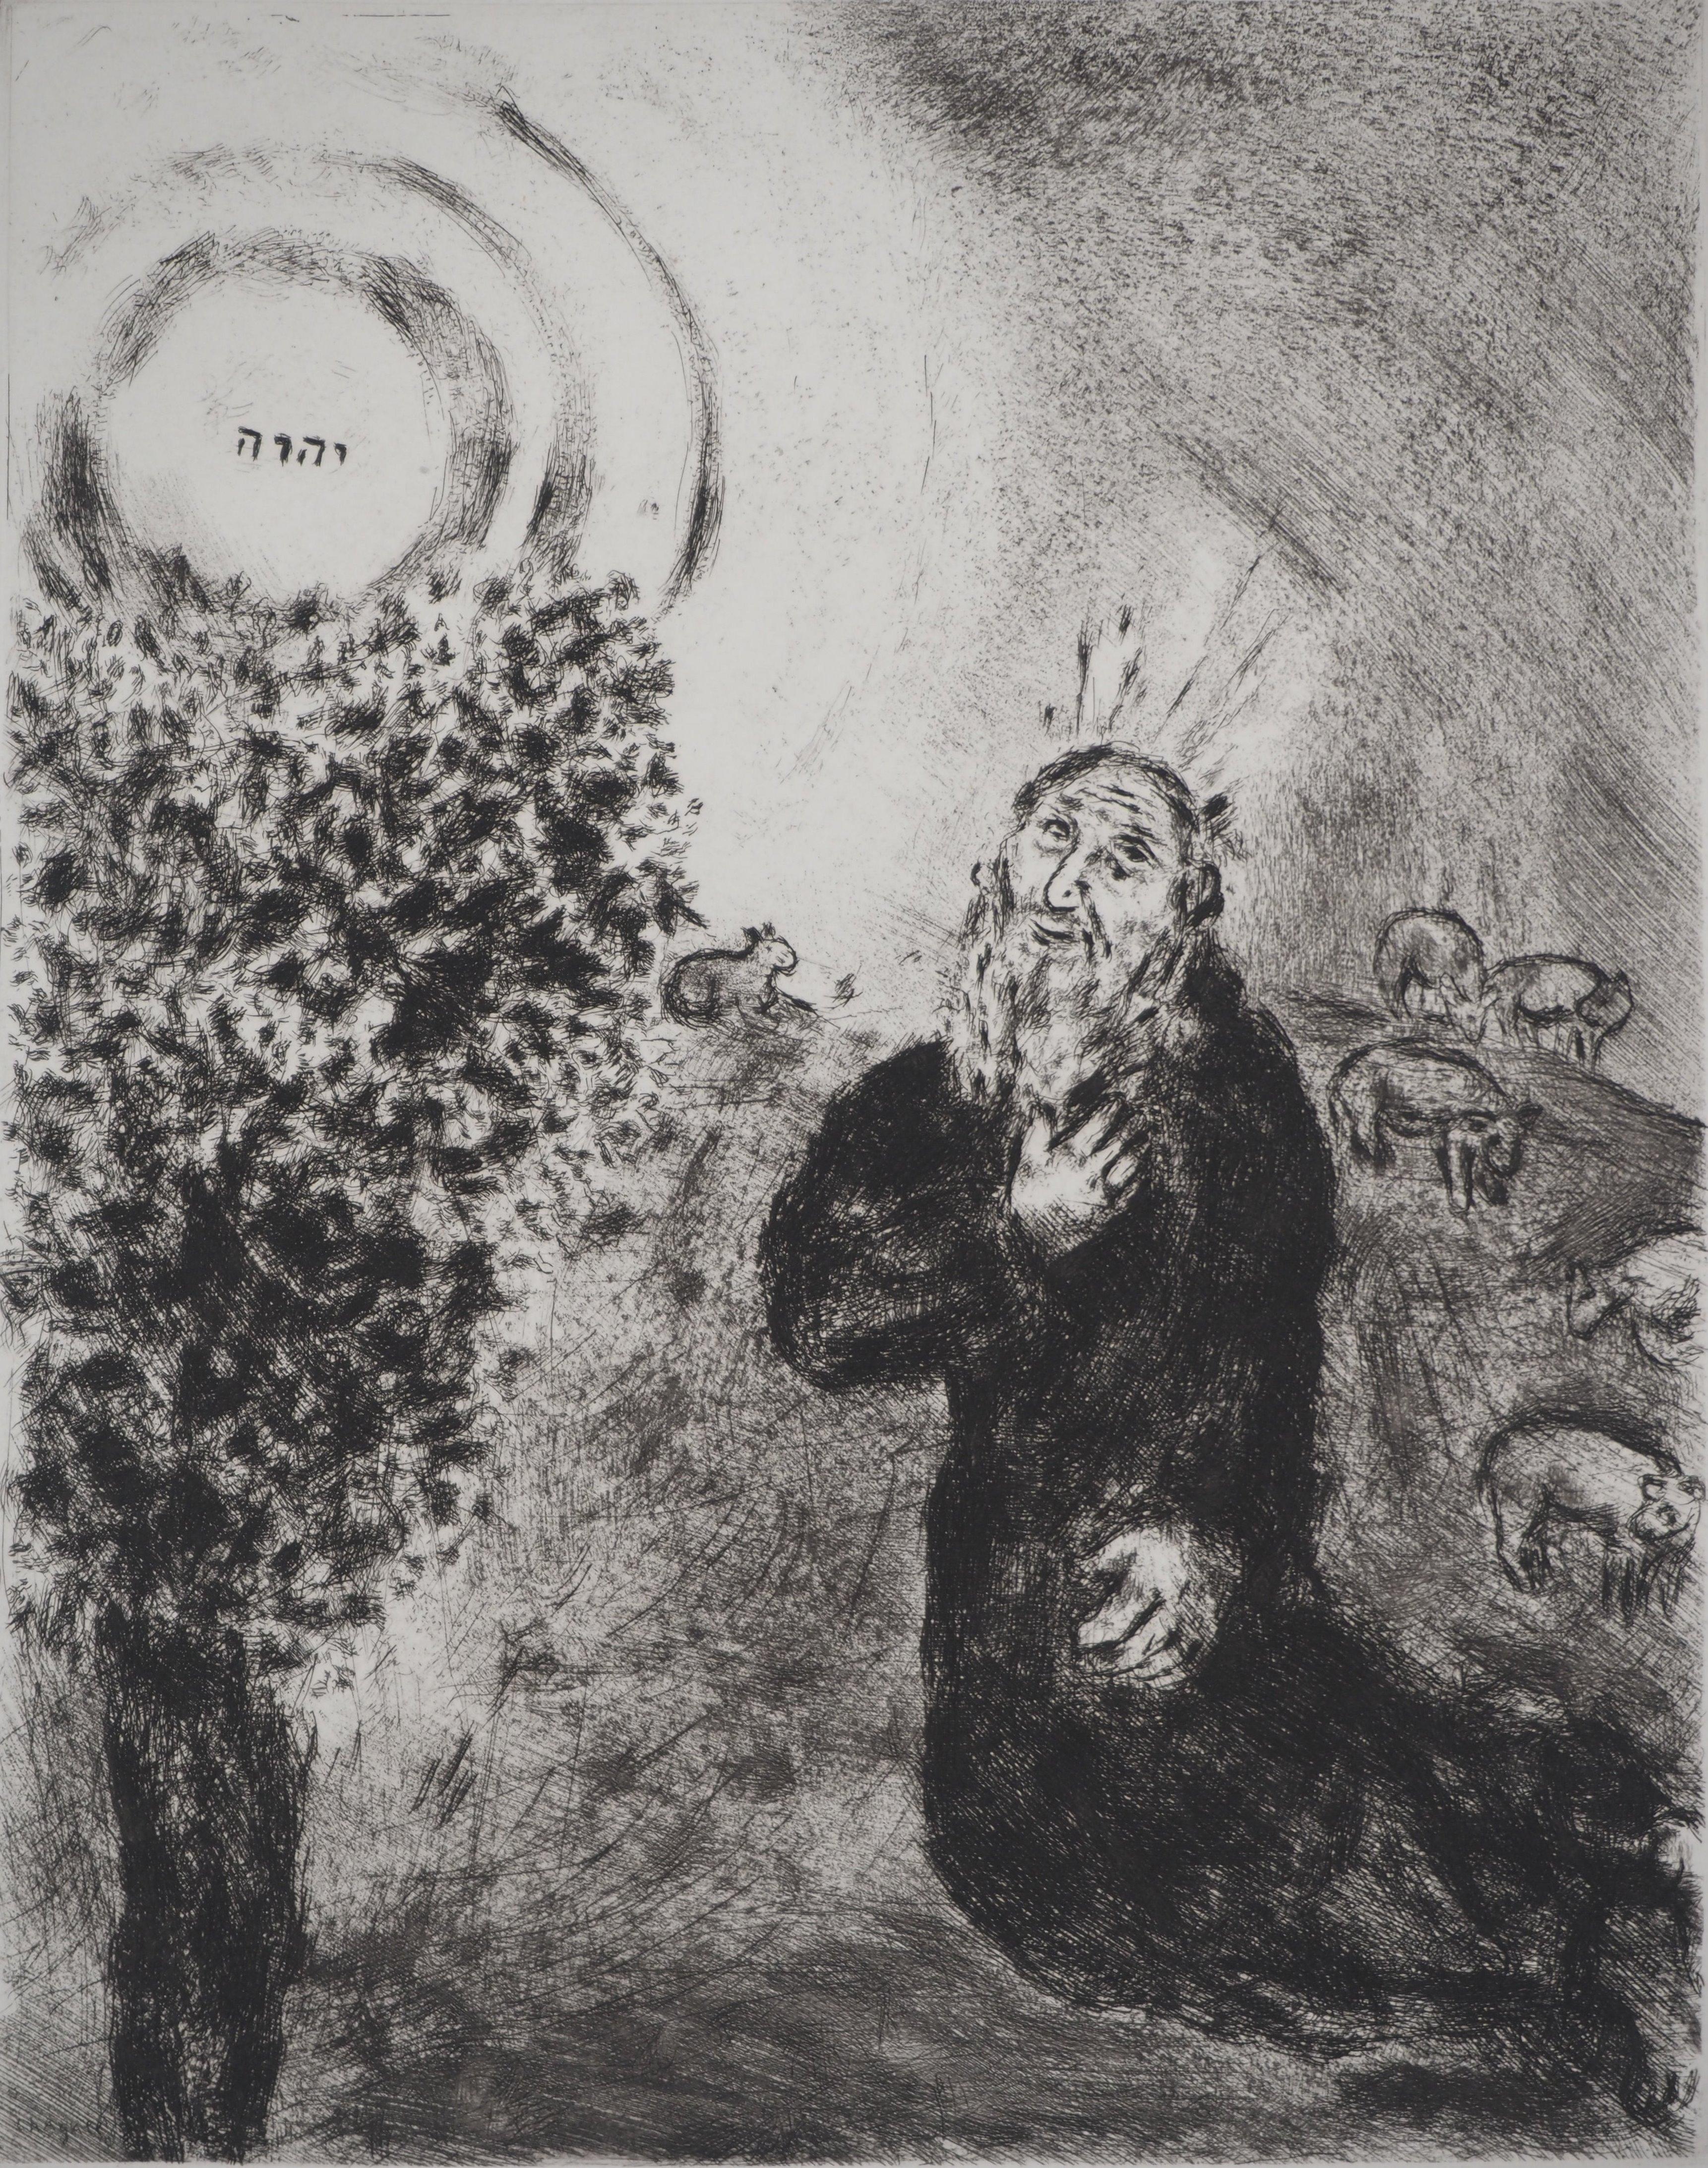 Marc Chagall (1887-1958)
Bible : Le buisson ardent, 1939

Gravure originale
Signature imprimée dans la plaque
Sur vélin de Montval, 44 x 33.5 cm (c. 17.3 x 13.1 inch)

INFORMATION : Publié par Vollard / Tériade en 1956

RÉFÉRENCE : Catalogue